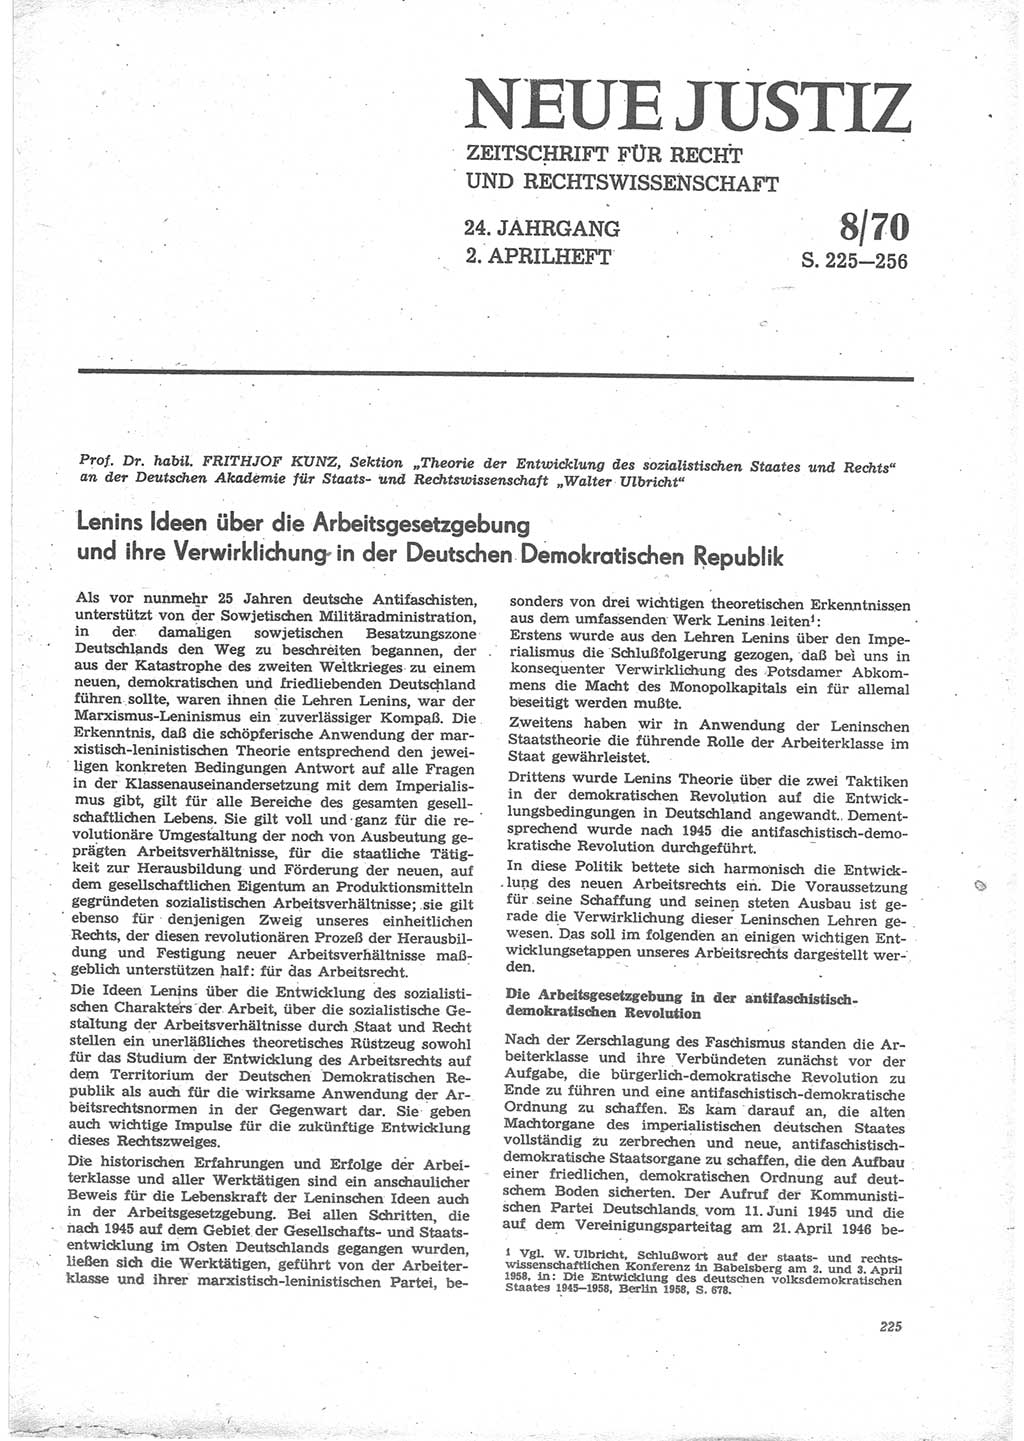 Neue Justiz (NJ), Zeitschrift für Recht und Rechtswissenschaft [Deutsche Demokratische Republik (DDR)], 24. Jahrgang 1970, Seite 225 (NJ DDR 1970, S. 225)